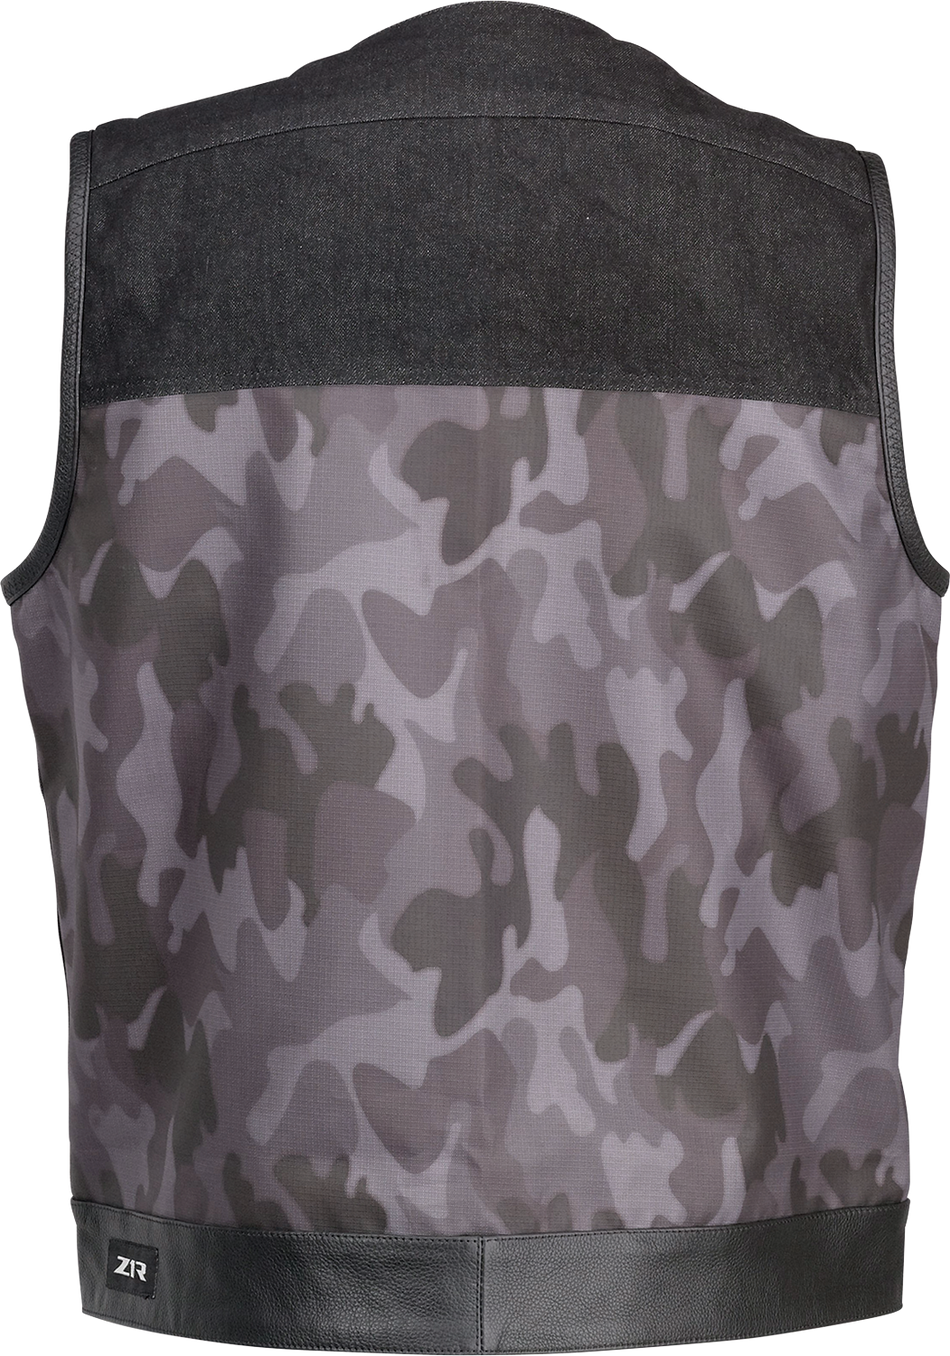 Z1R Nightfire Camo Vest - Black/Gray - Small 2830-0624